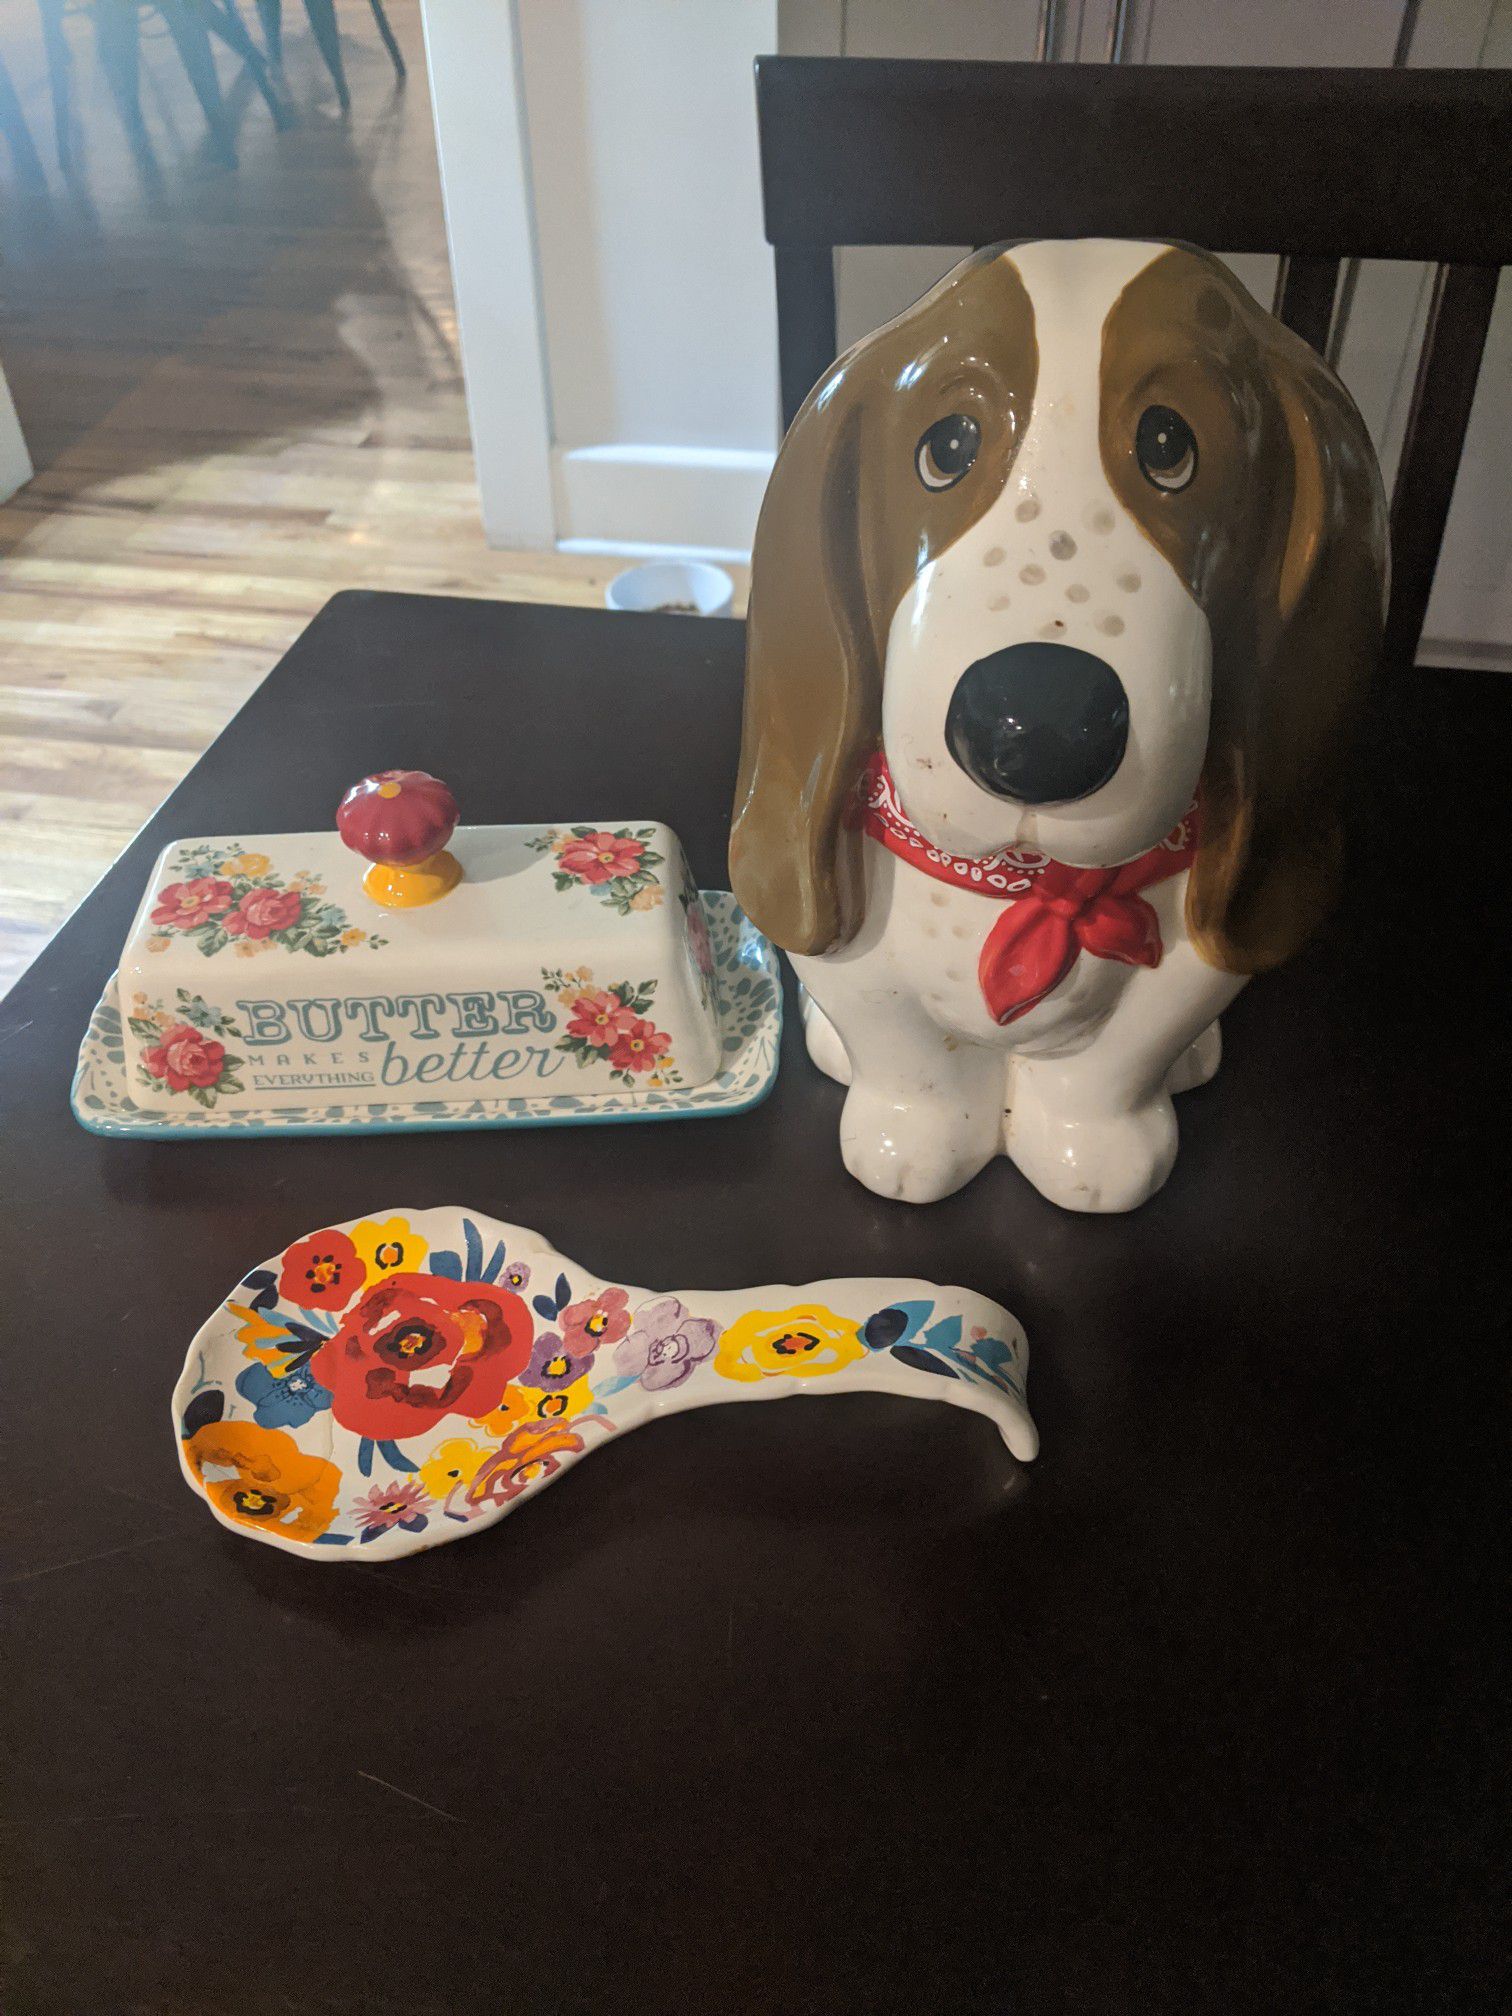 Kitchen essentials - floral/dog